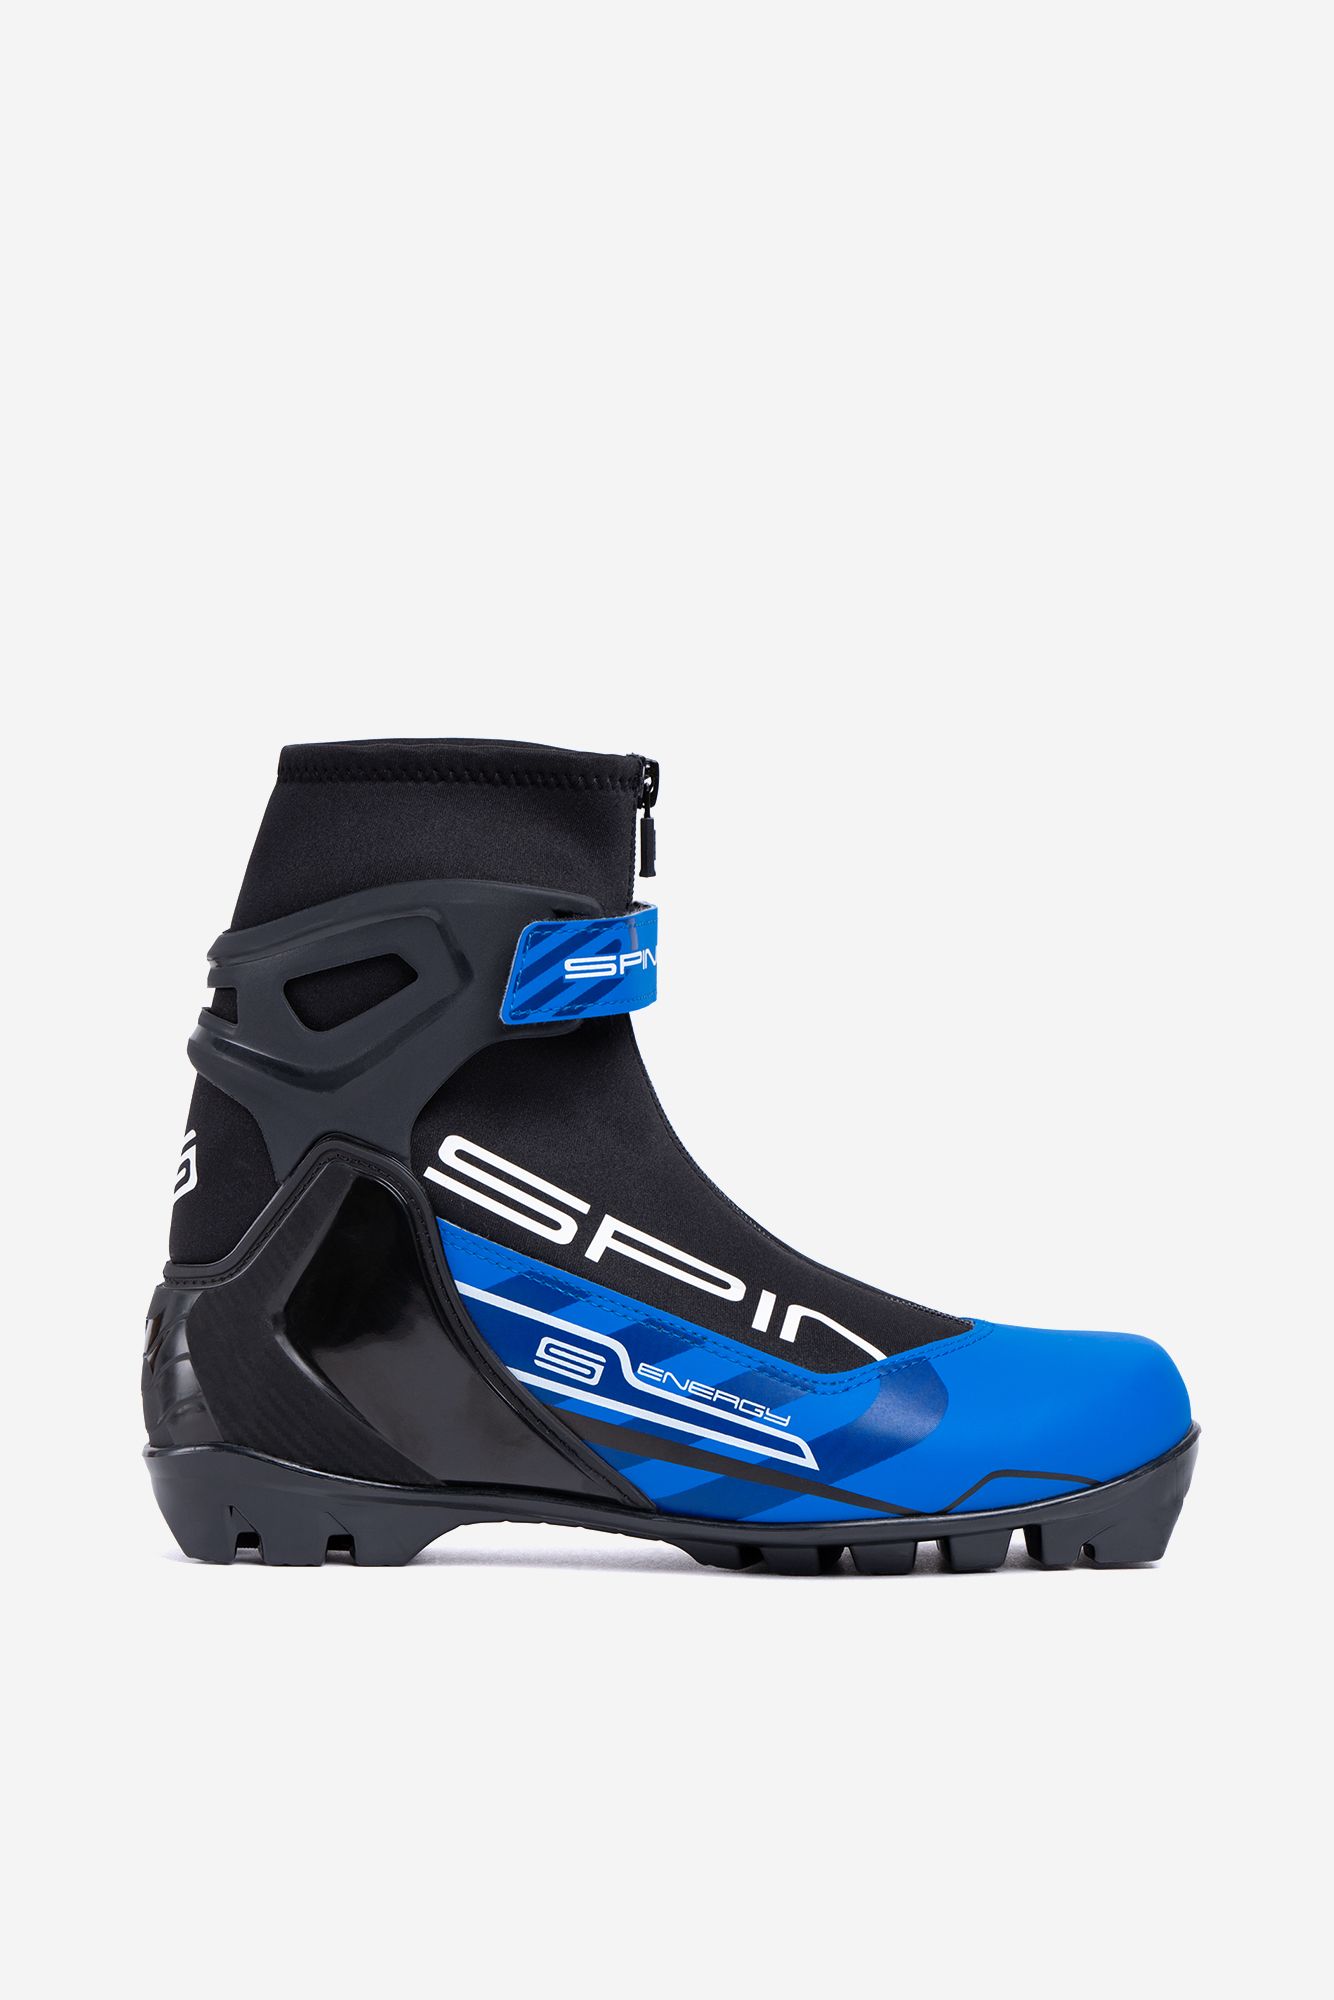 Лыжные ботинки SPINE NNN Energy (258) (черный/синий) (38)